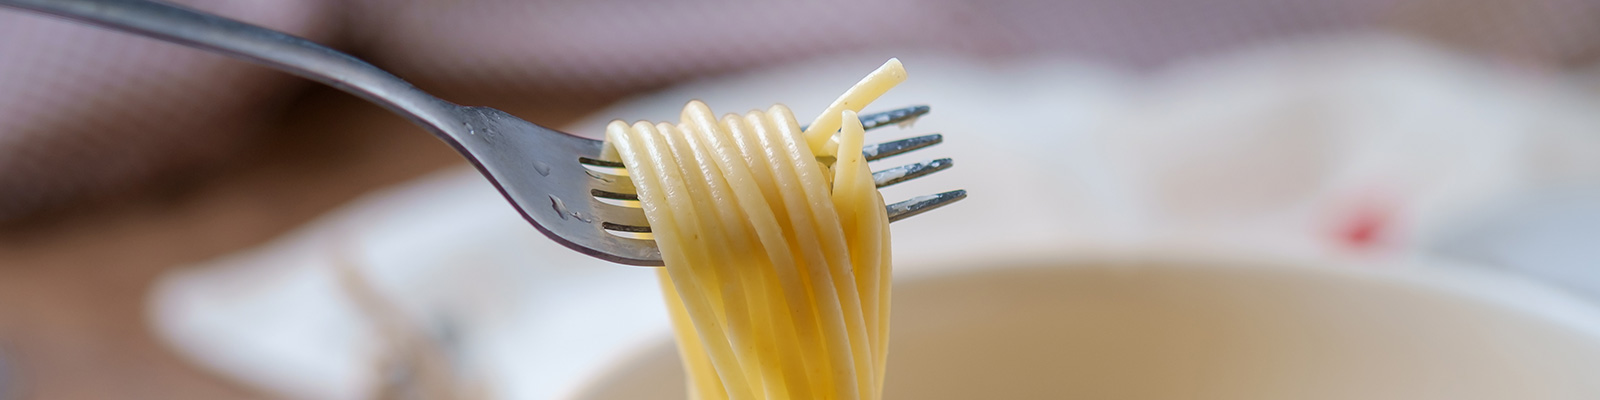 ¿Cómo conservar la pasta cocida para que esté perfecta?